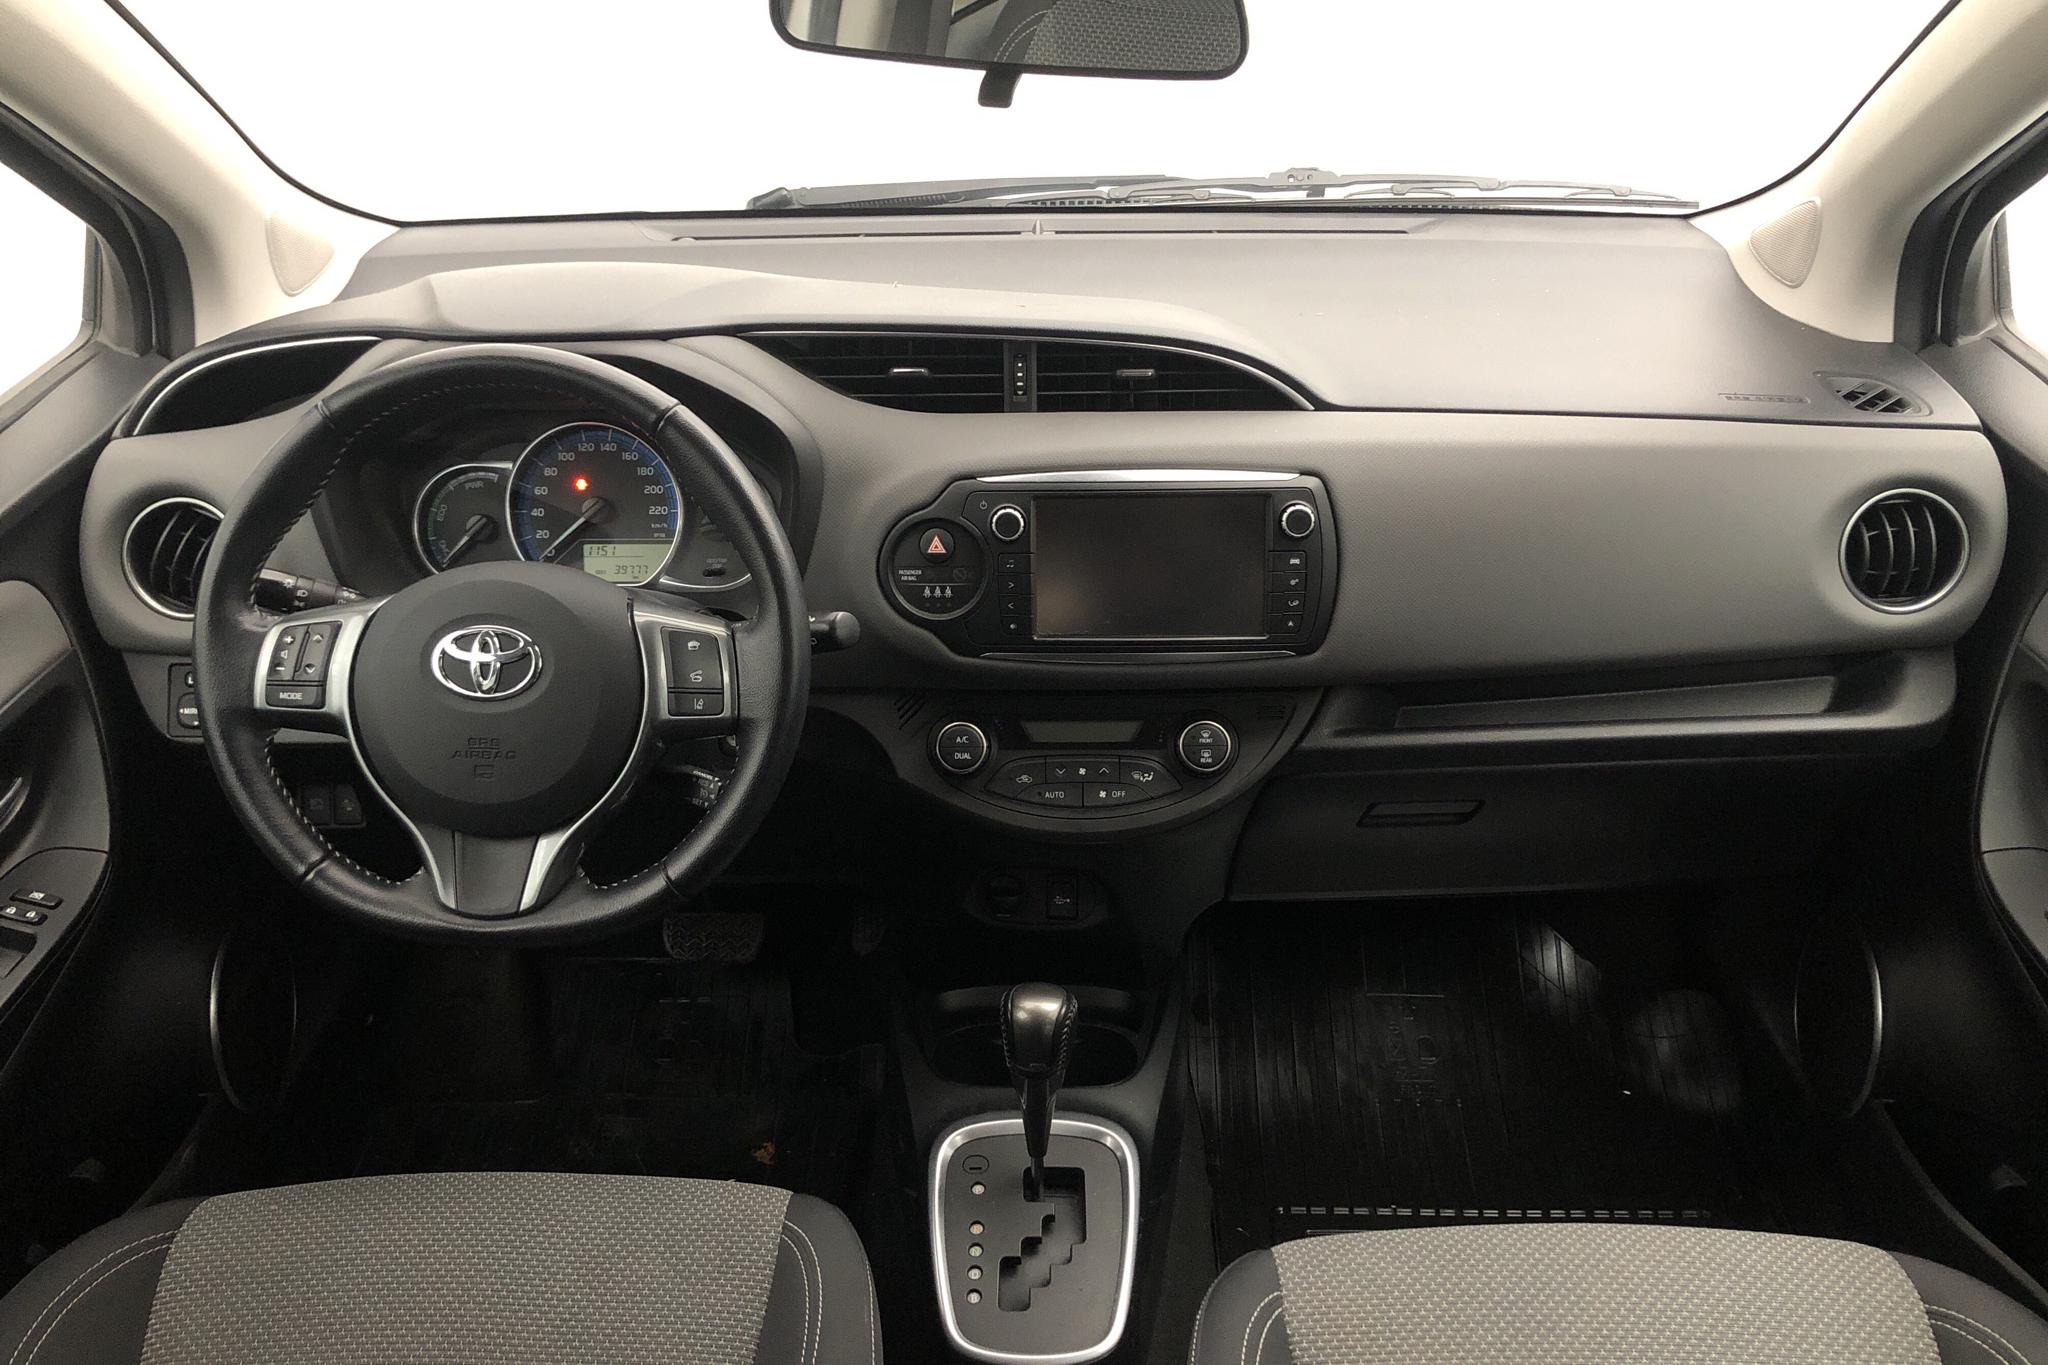 Toyota Yaris 1.5 HSD 5dr (75hk) - 3 978 mil - Automat - silver - 2015